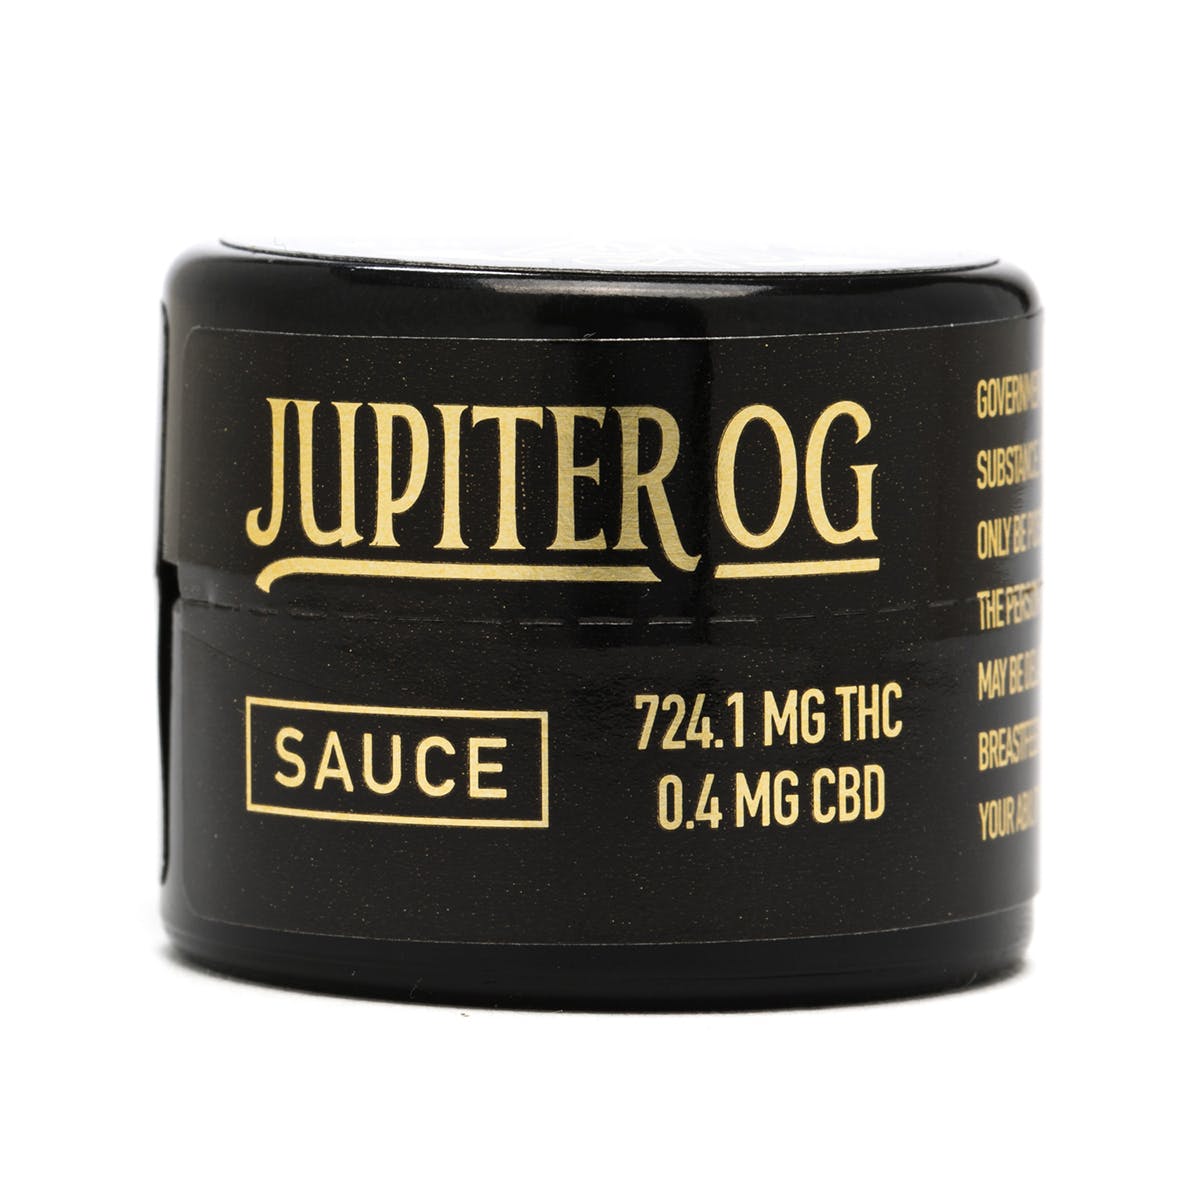 wax-west-coast-cure-jupiter-og-live-resin-sauce